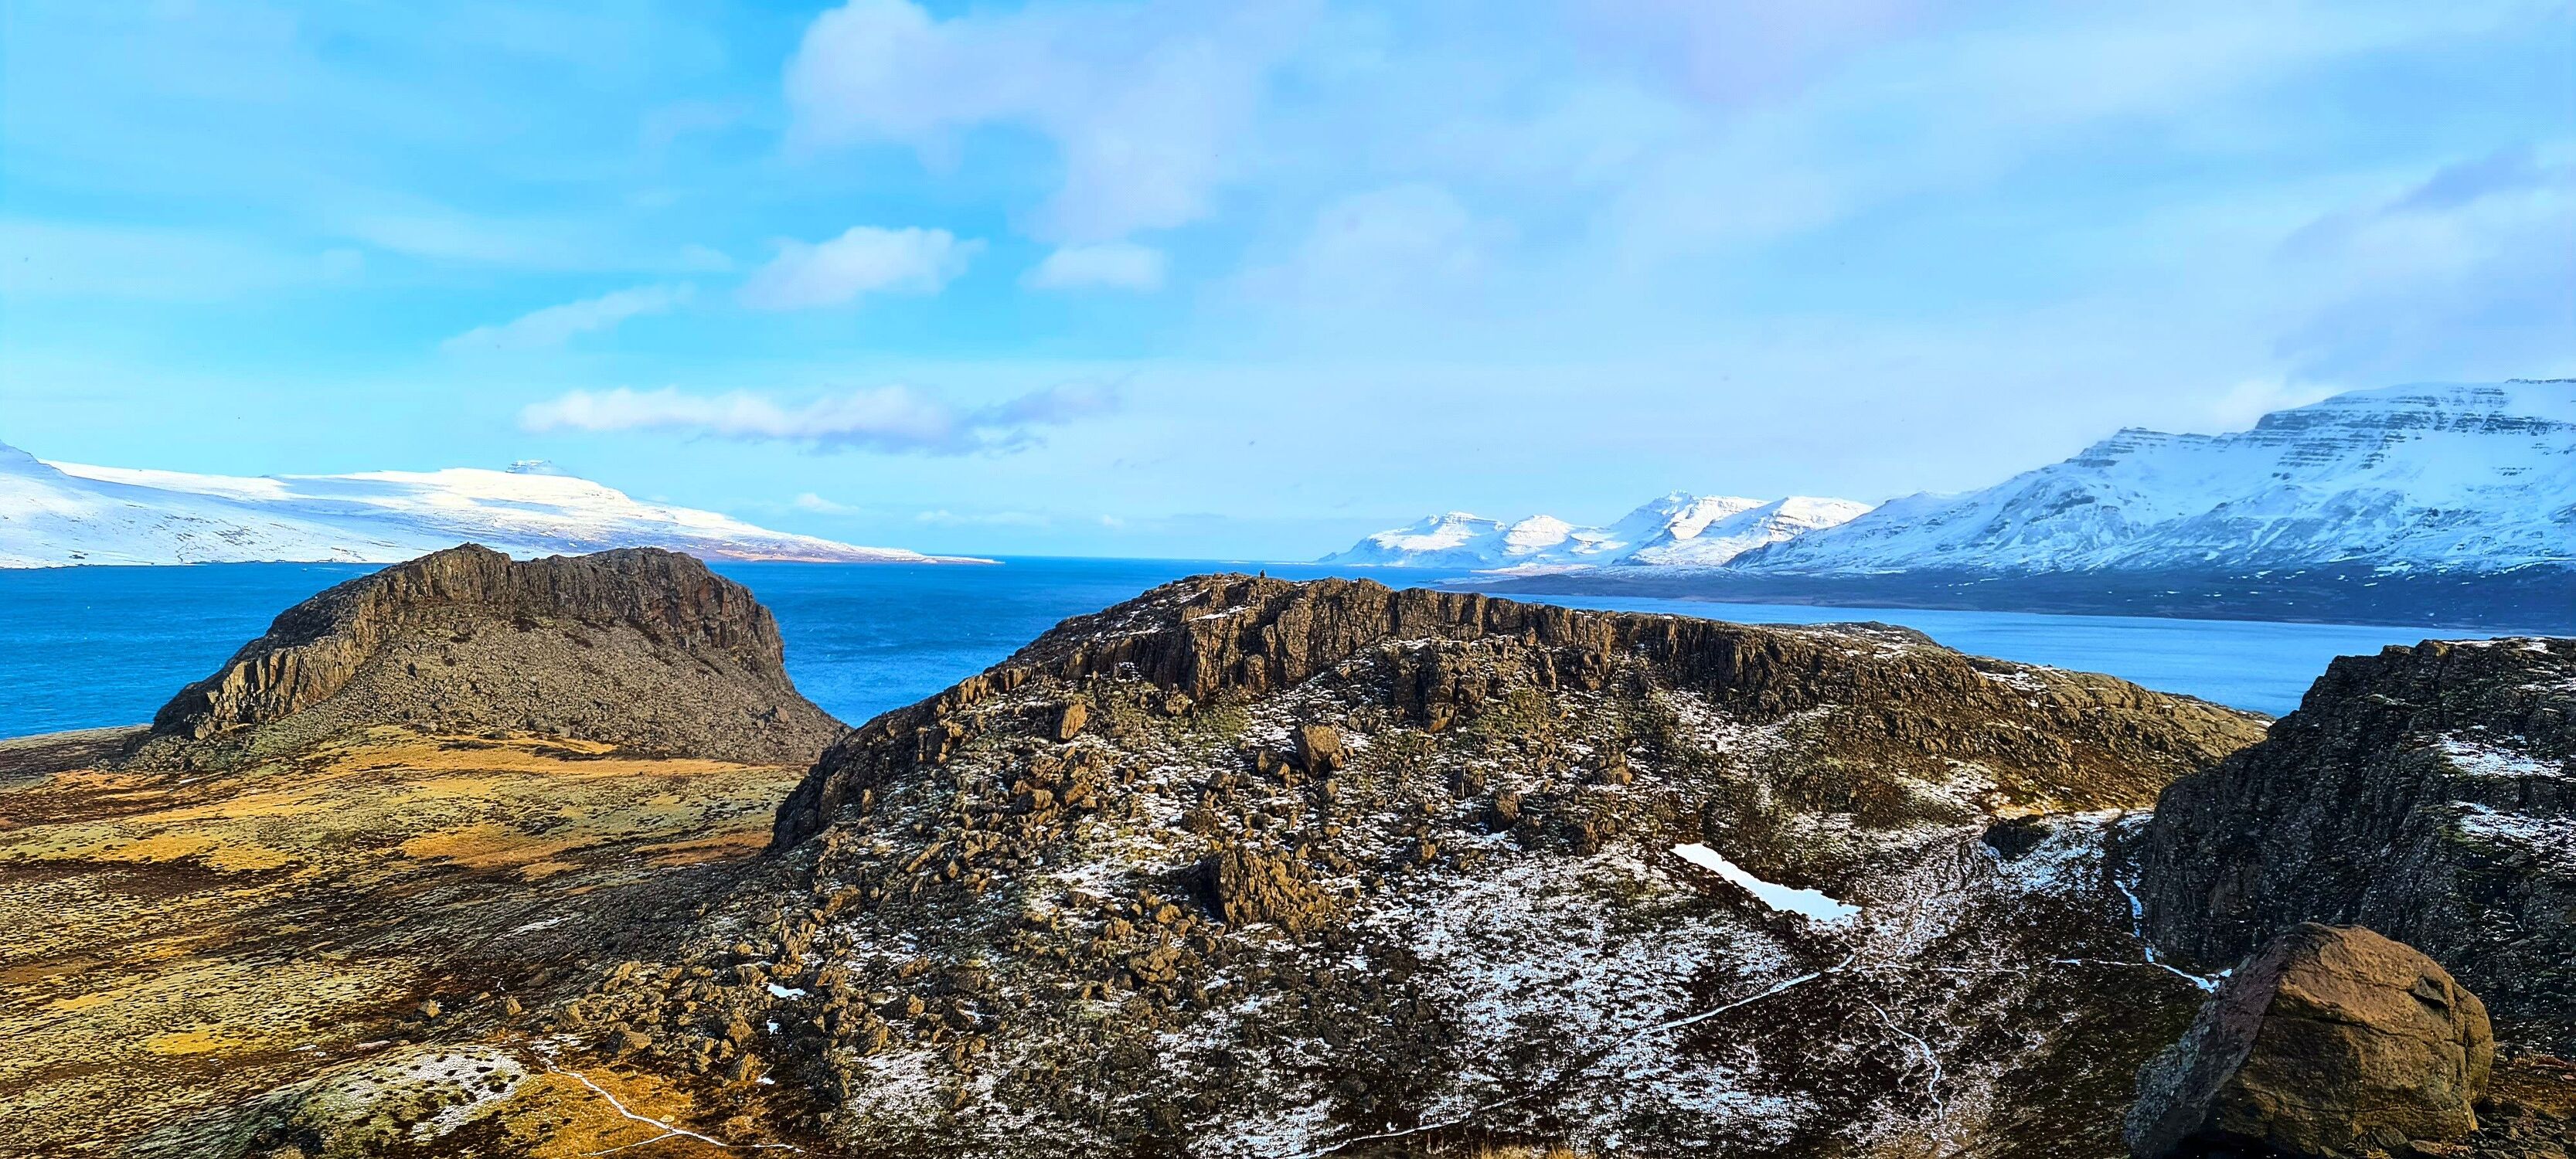 Bild mit Natur, Landschaften, Berge und Hügel, Fjorde, island, schneebedeckt